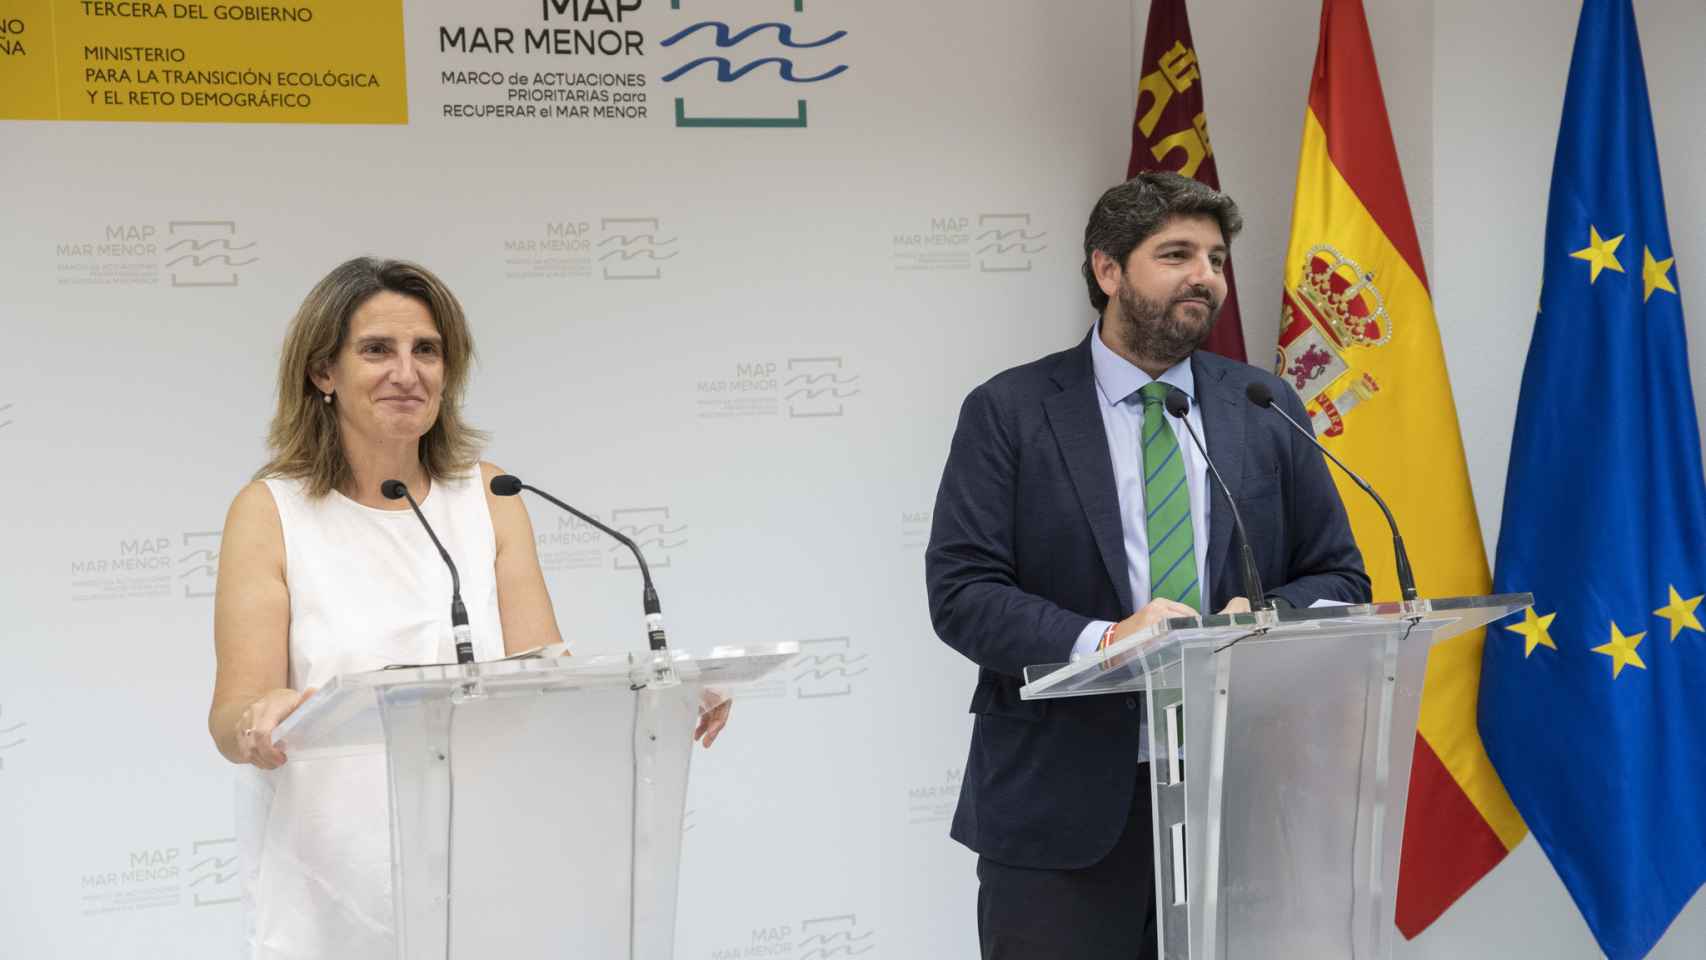 La ministra para la Transición Ecológica, Teresa Ribera, y el presidente murciano, Fernando López Miras, ofreciendo una rueda de prensa sobre la crisis ambiental del Mar Menor.